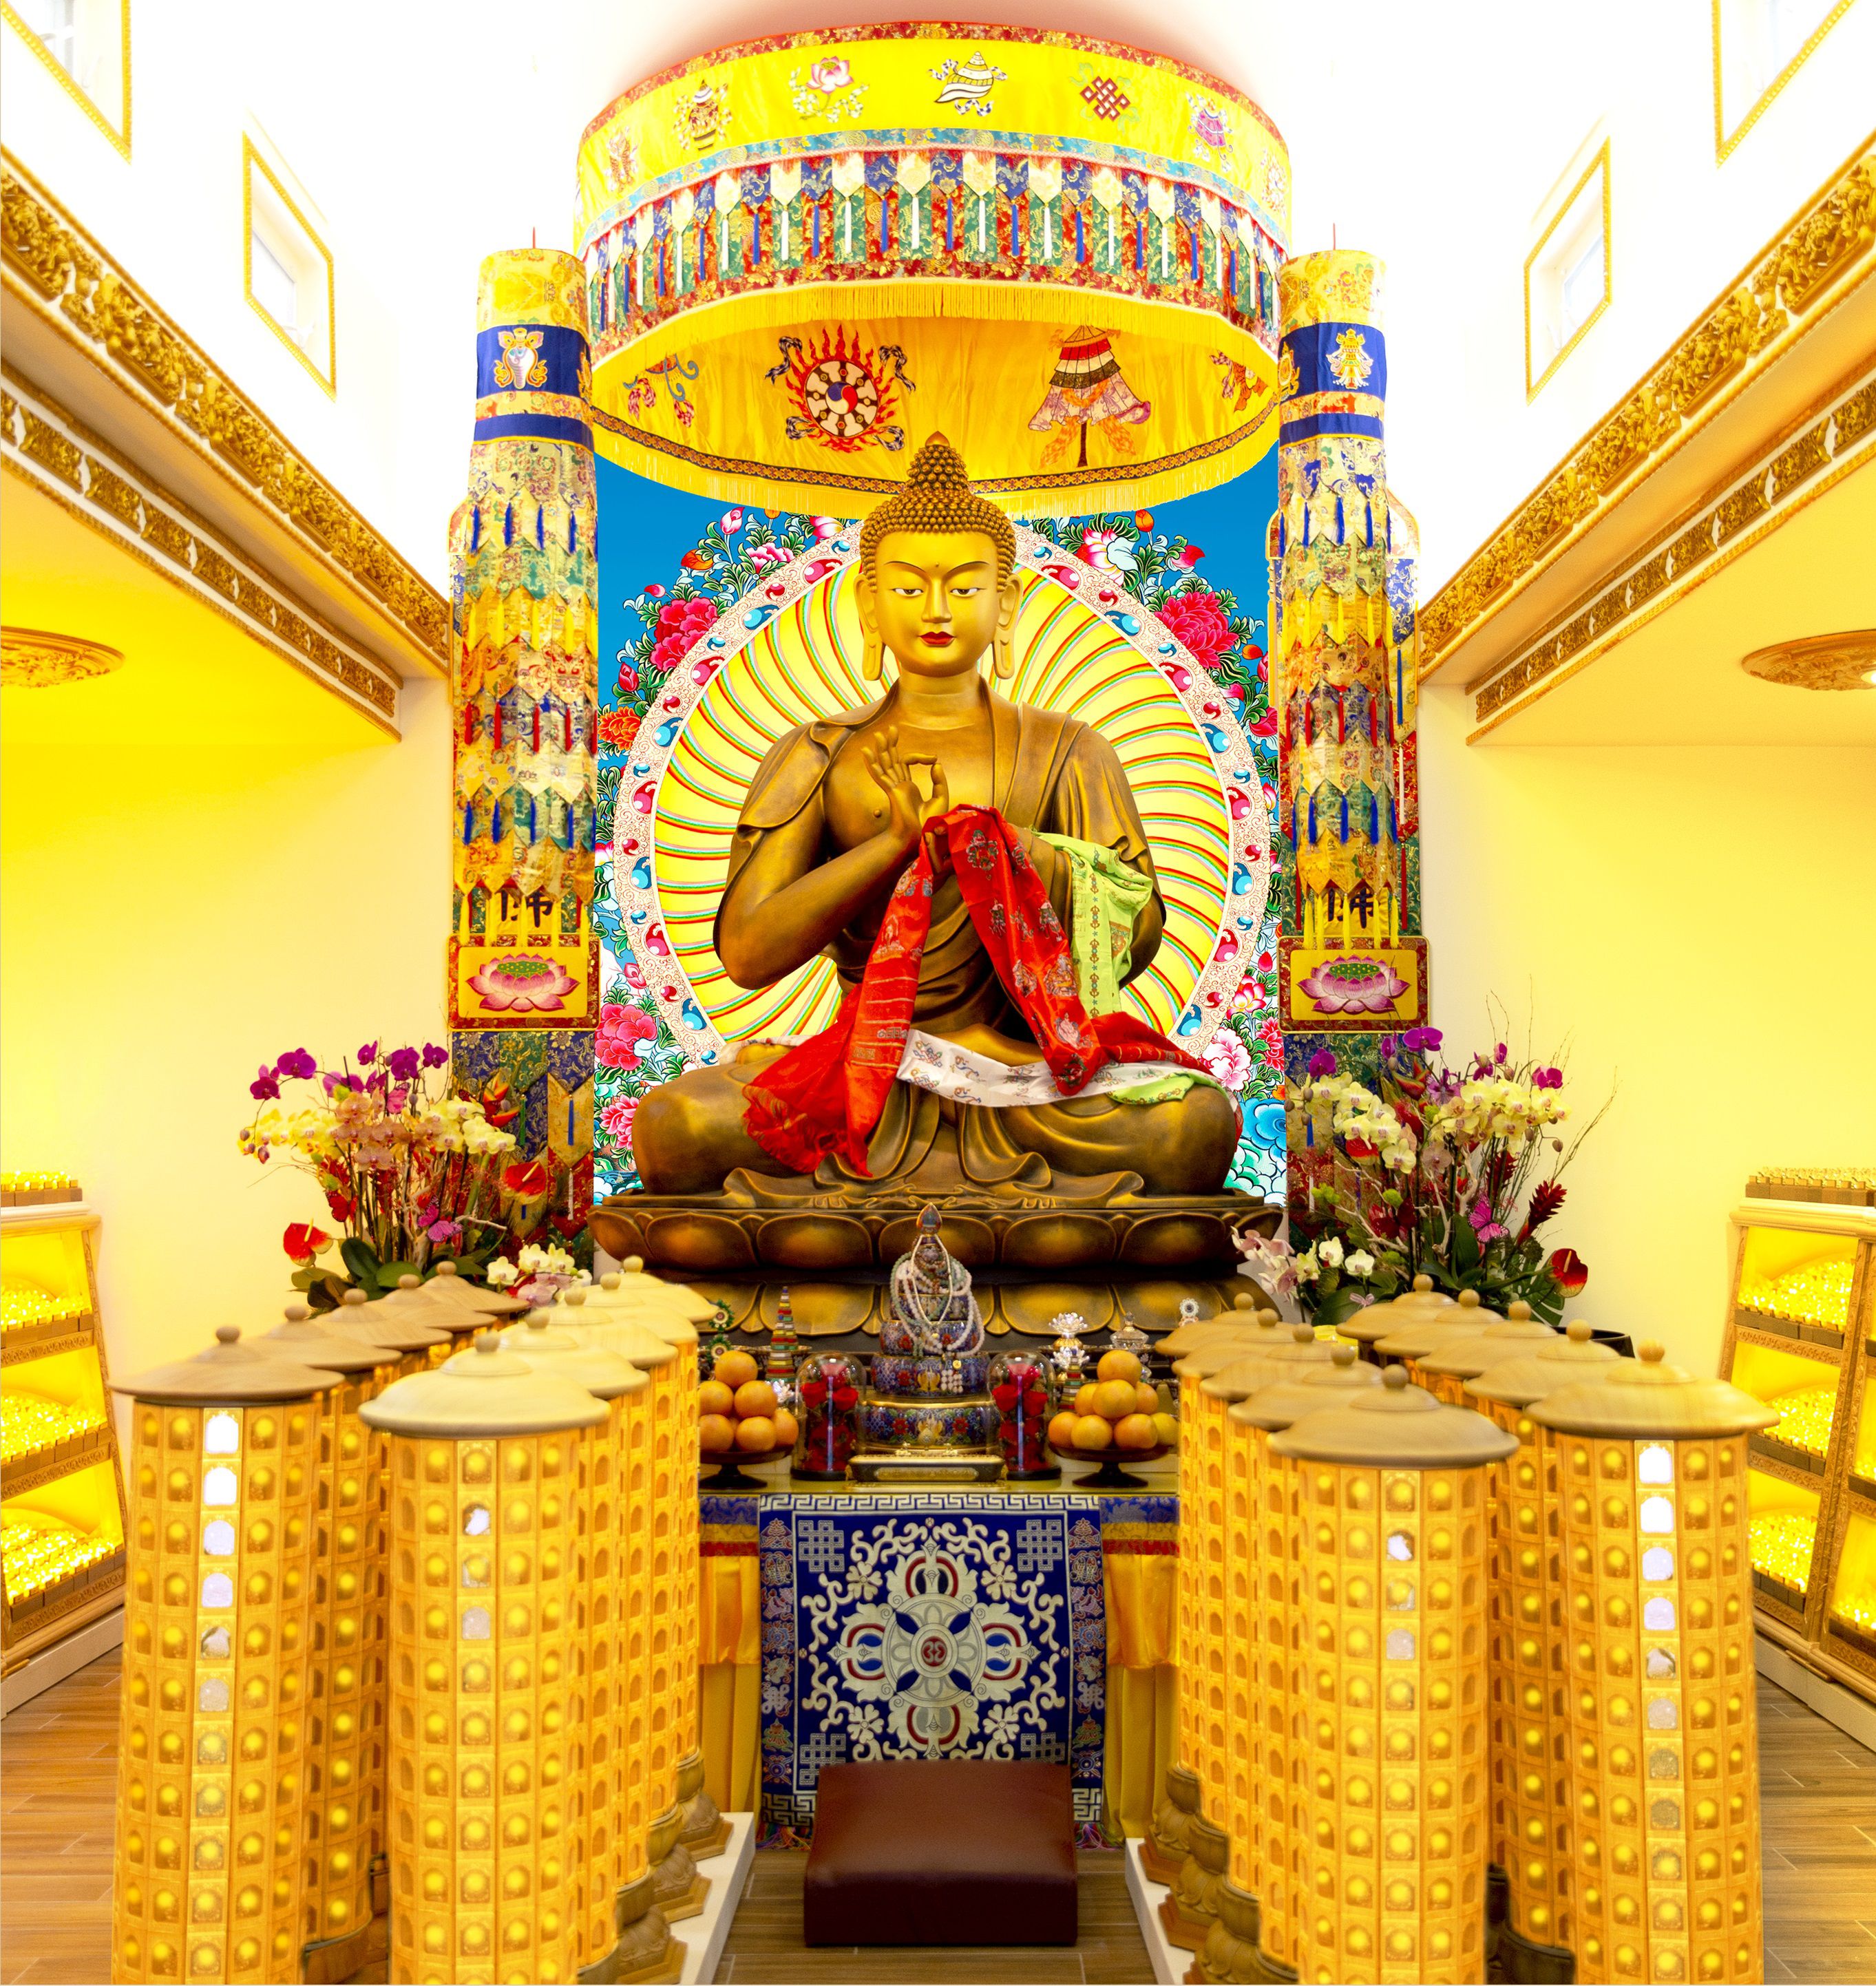 聖蹟寺在燃燈古佛殿為大眾提供《光明祈福燈》